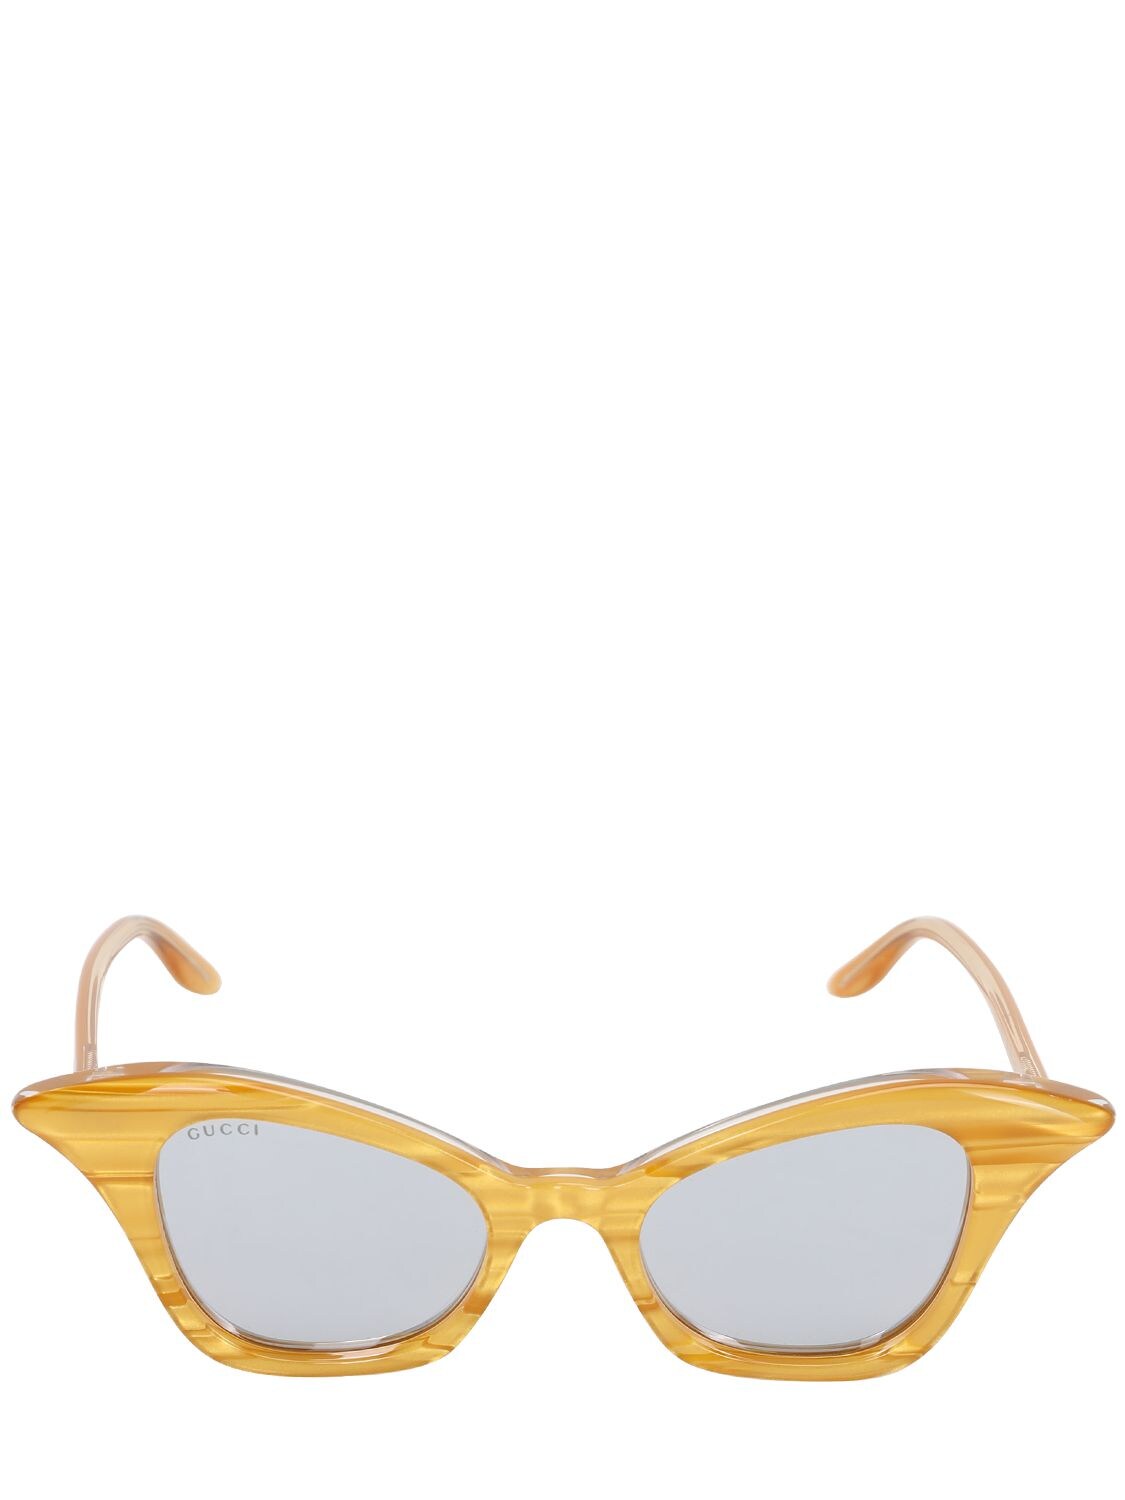 Gucci Acetate Cat Eye Sunglasses In Orange,mirrored